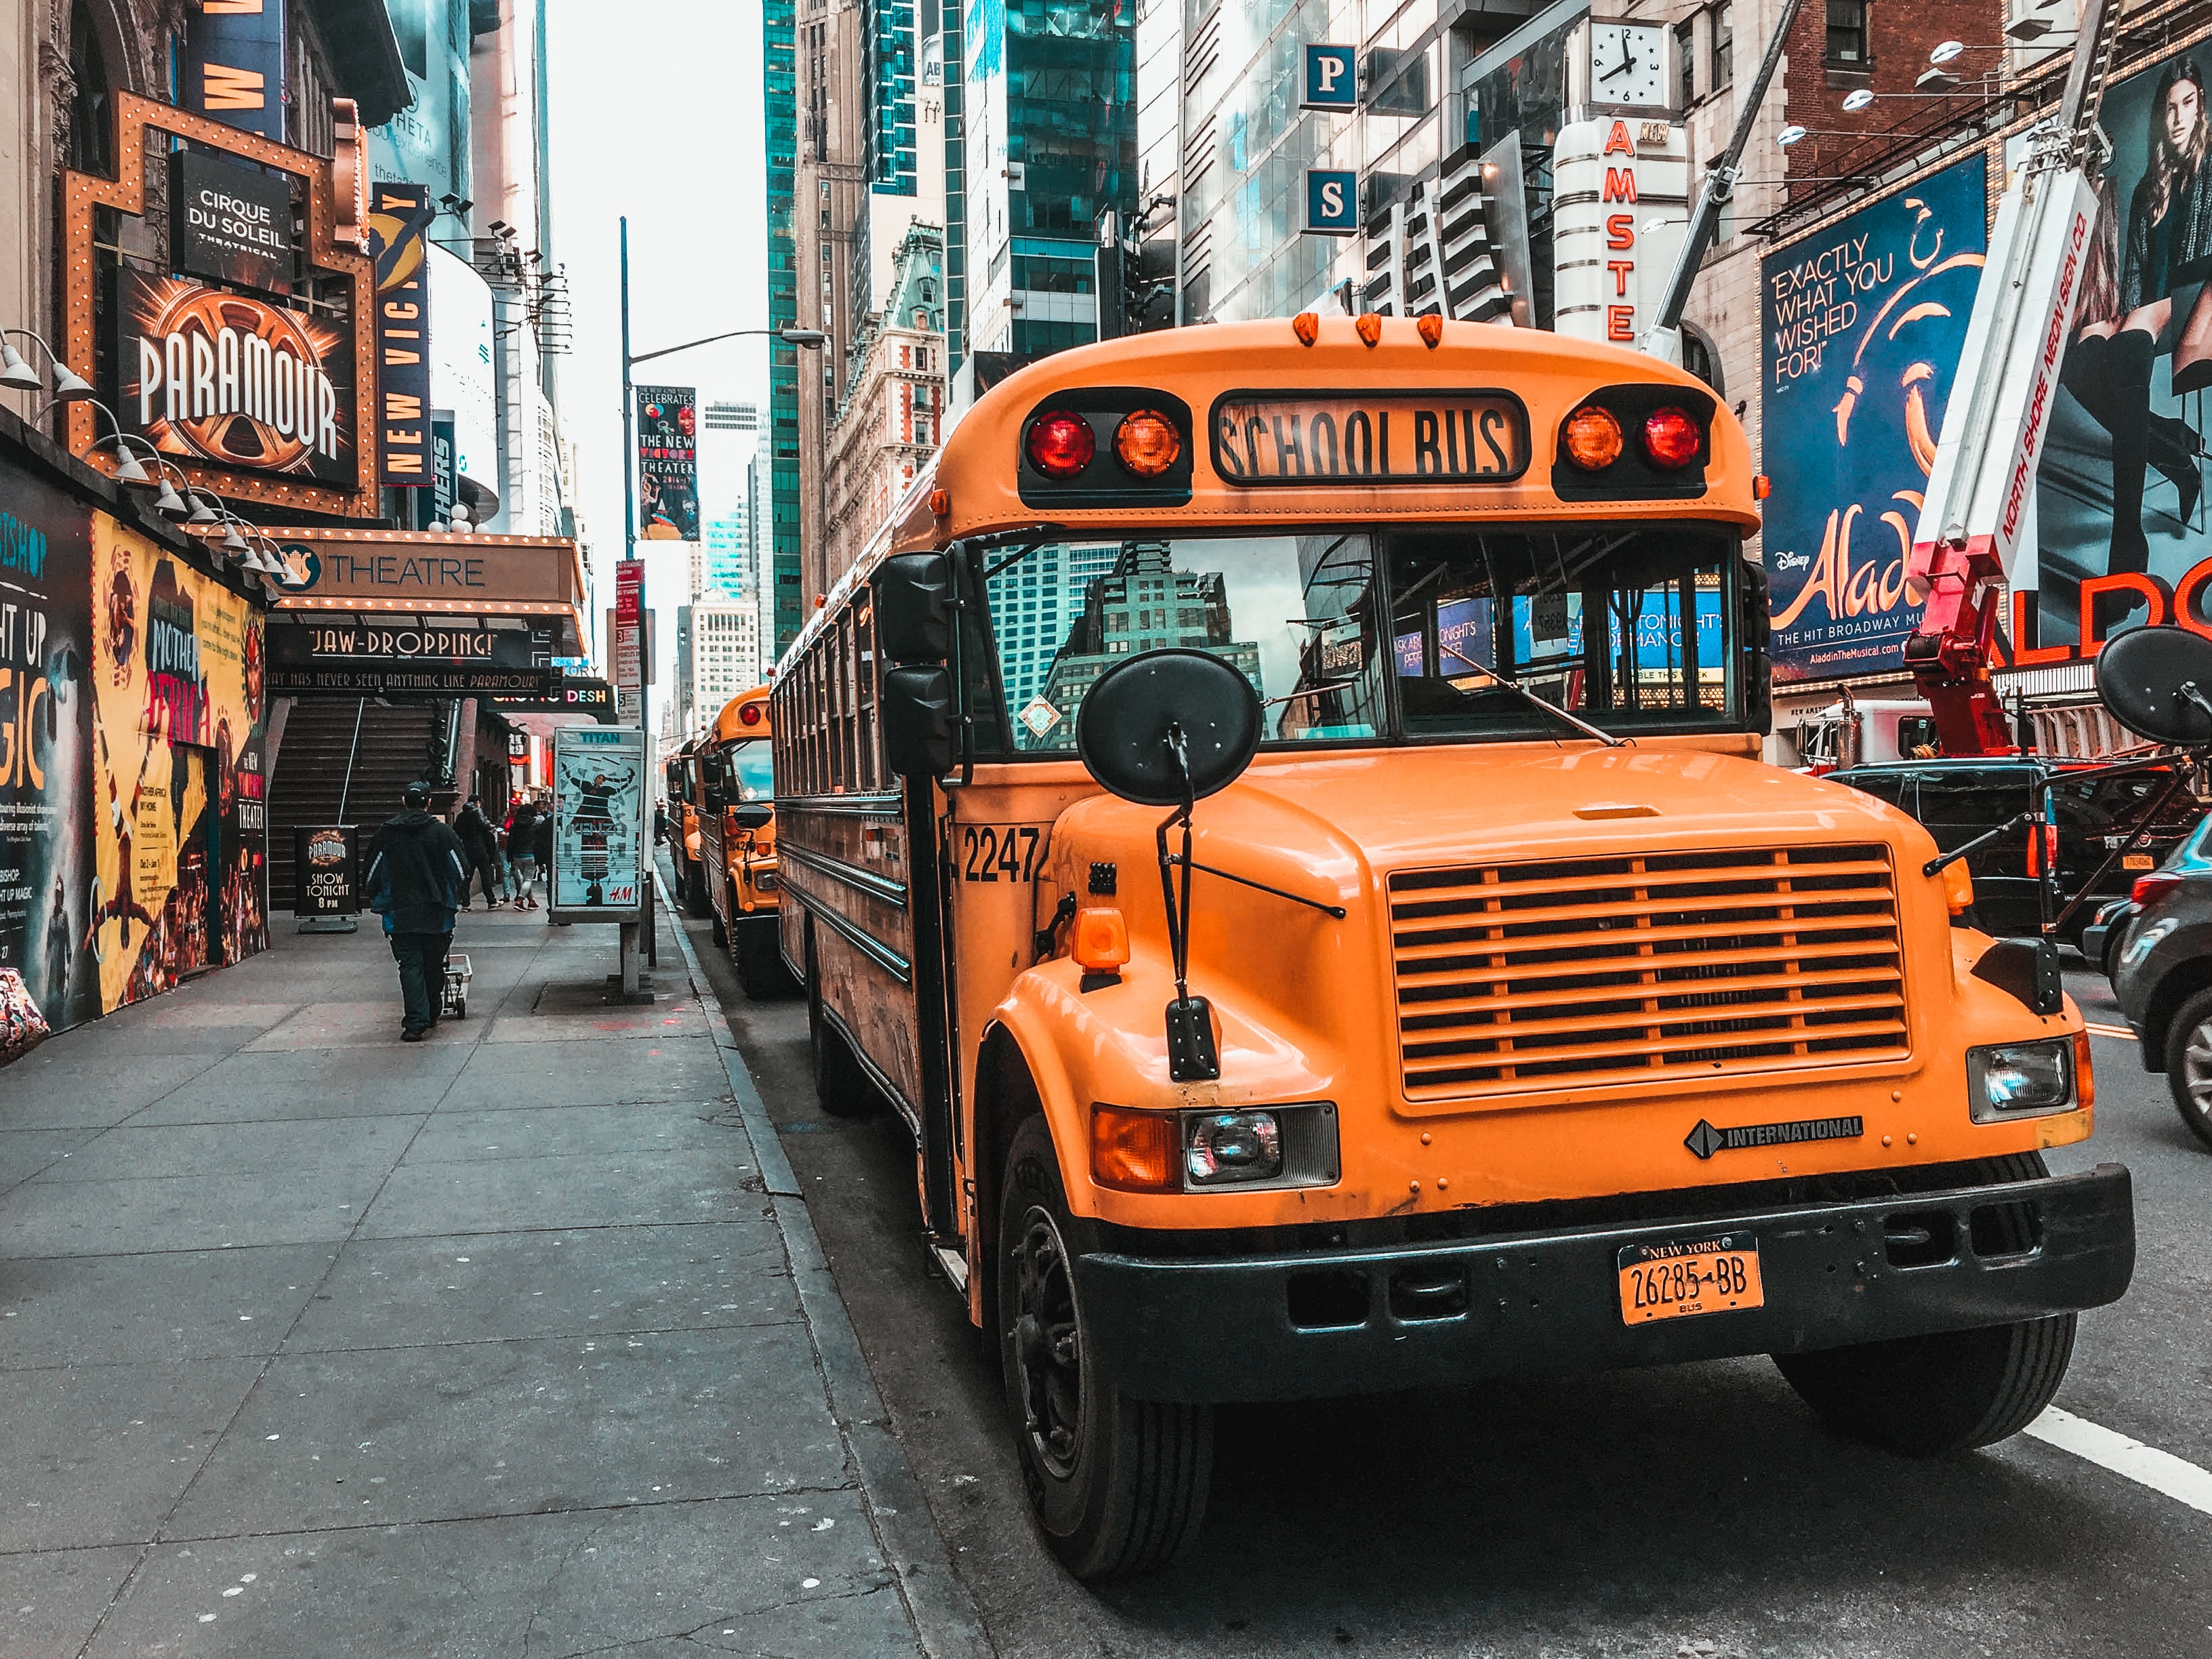 New York City schoolbus